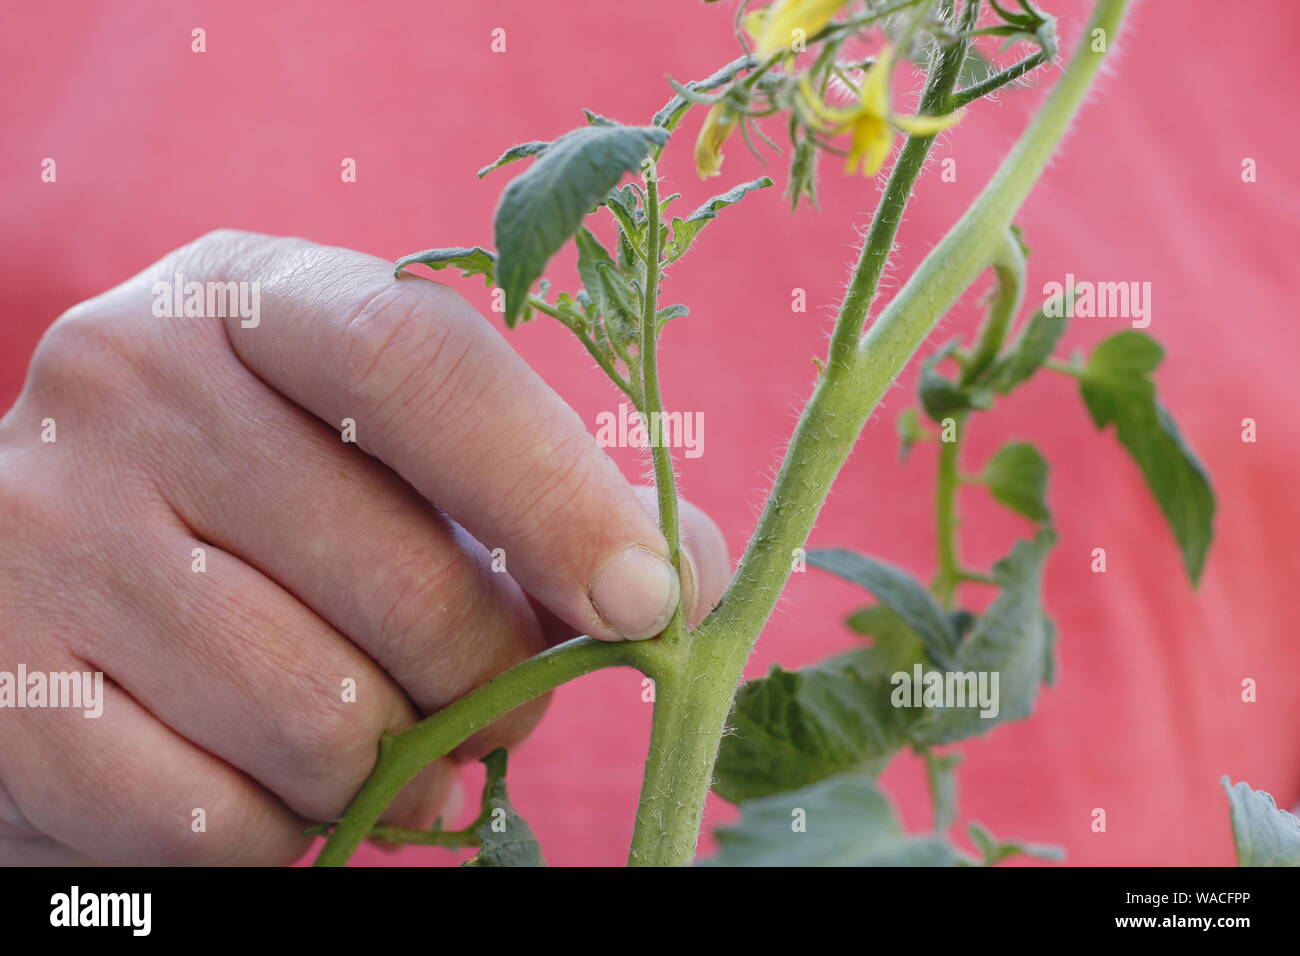 Von Solanum Lycopersicum weet Millionen". Kneifen Sie seitentriebe (Quereinsteiger) auf einem Cordon tomatenpflanze von Hand. Hauptversammlung Stockfoto